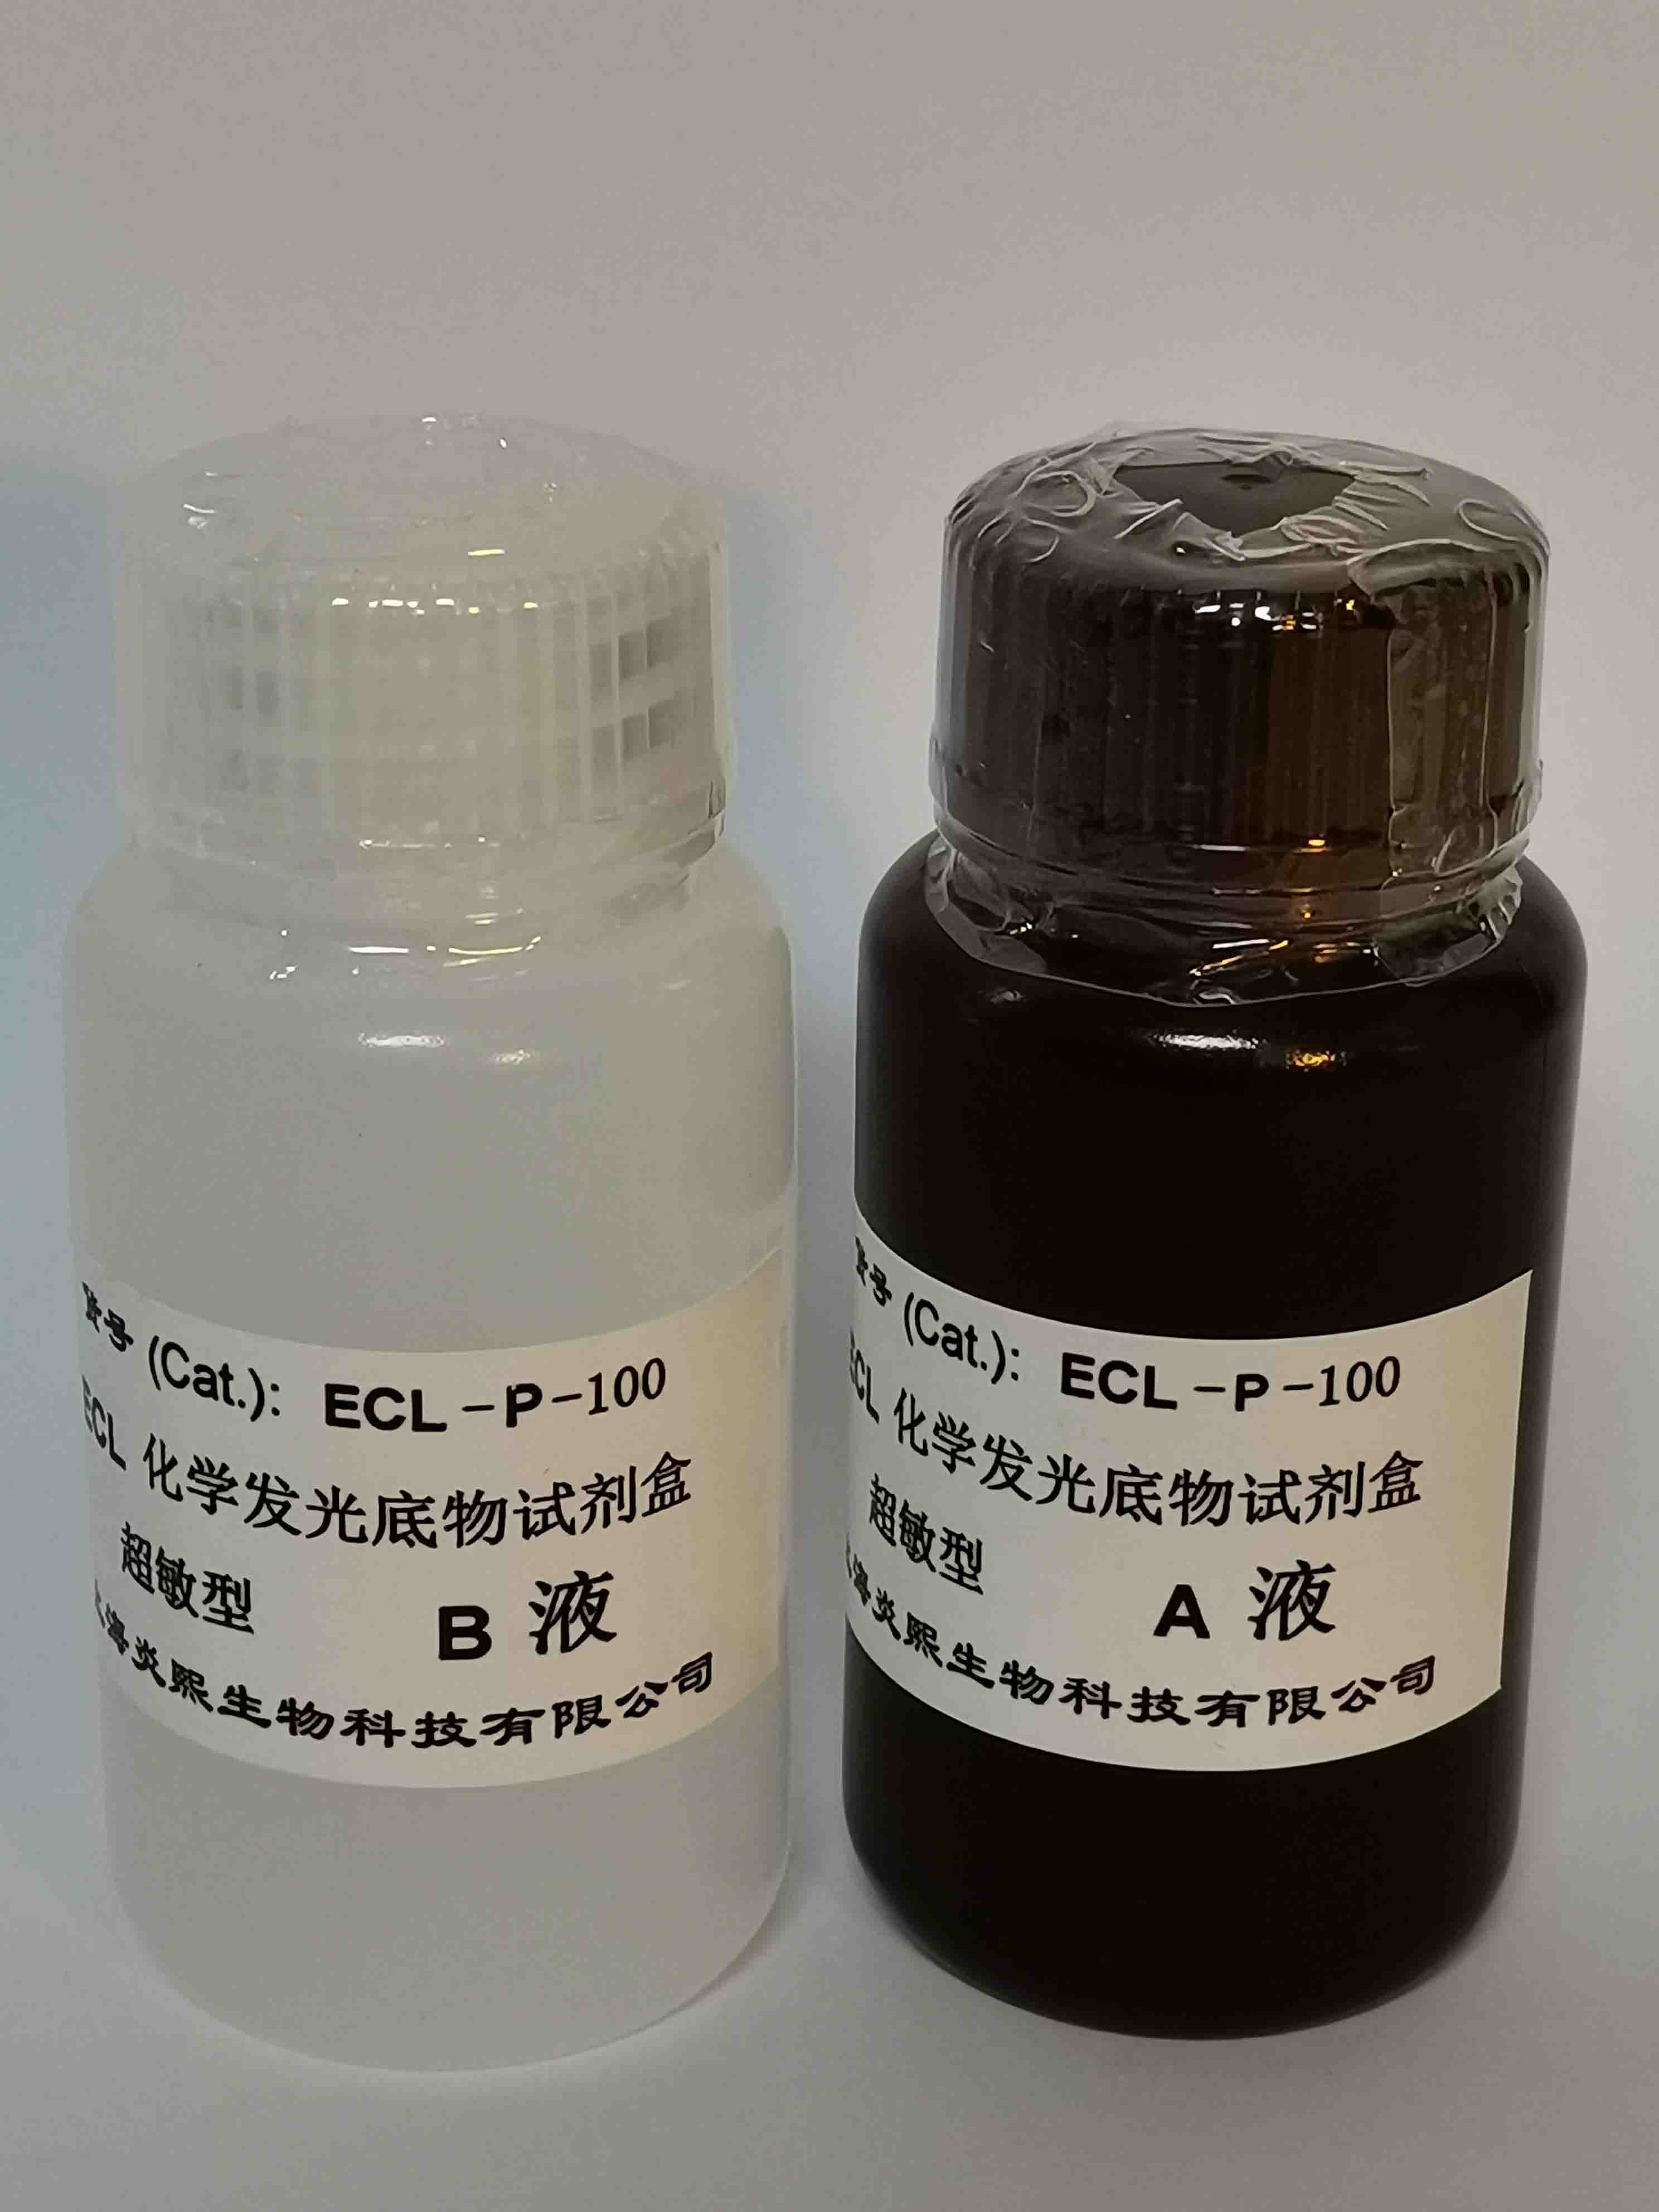 超敏型 ECL化学发光底物试剂盒批发